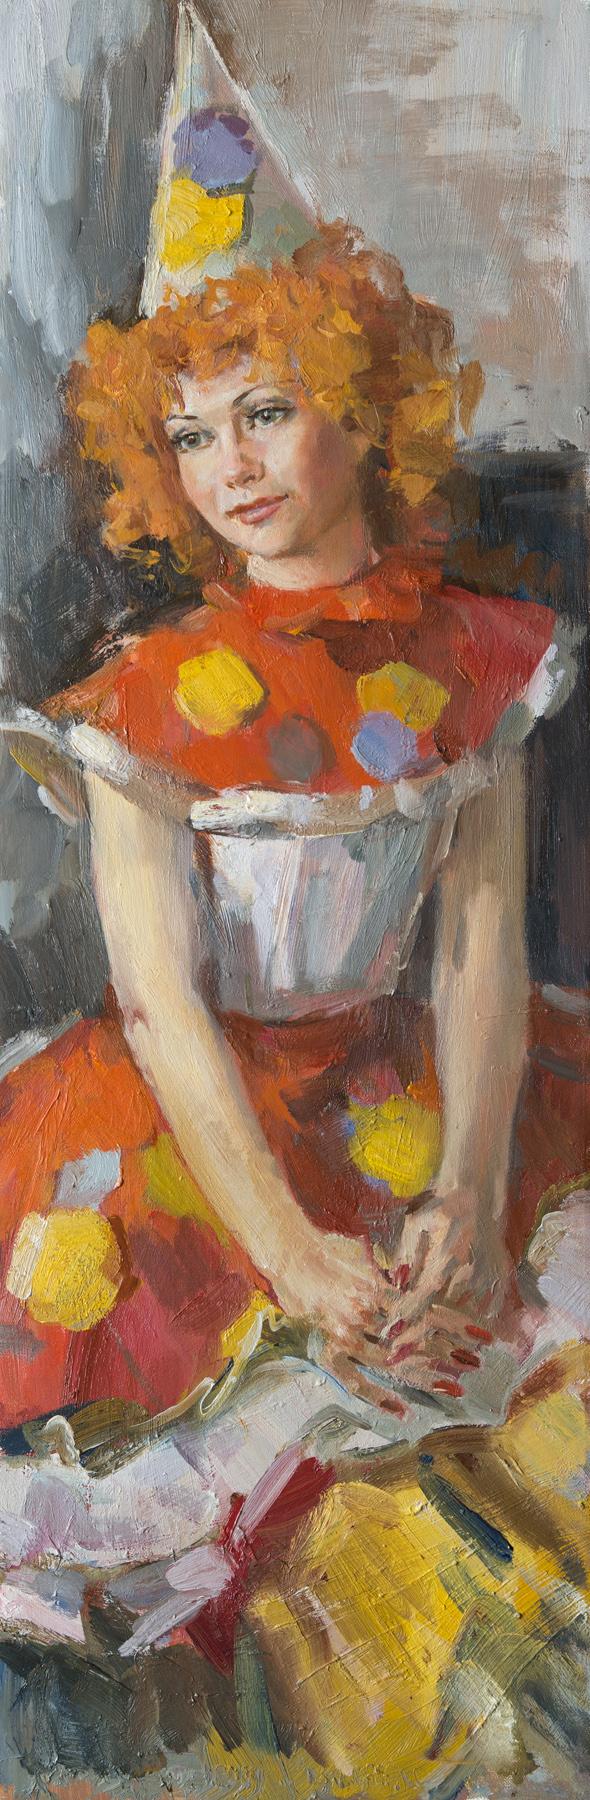 Вишнякова Наталья. Original modern art painting